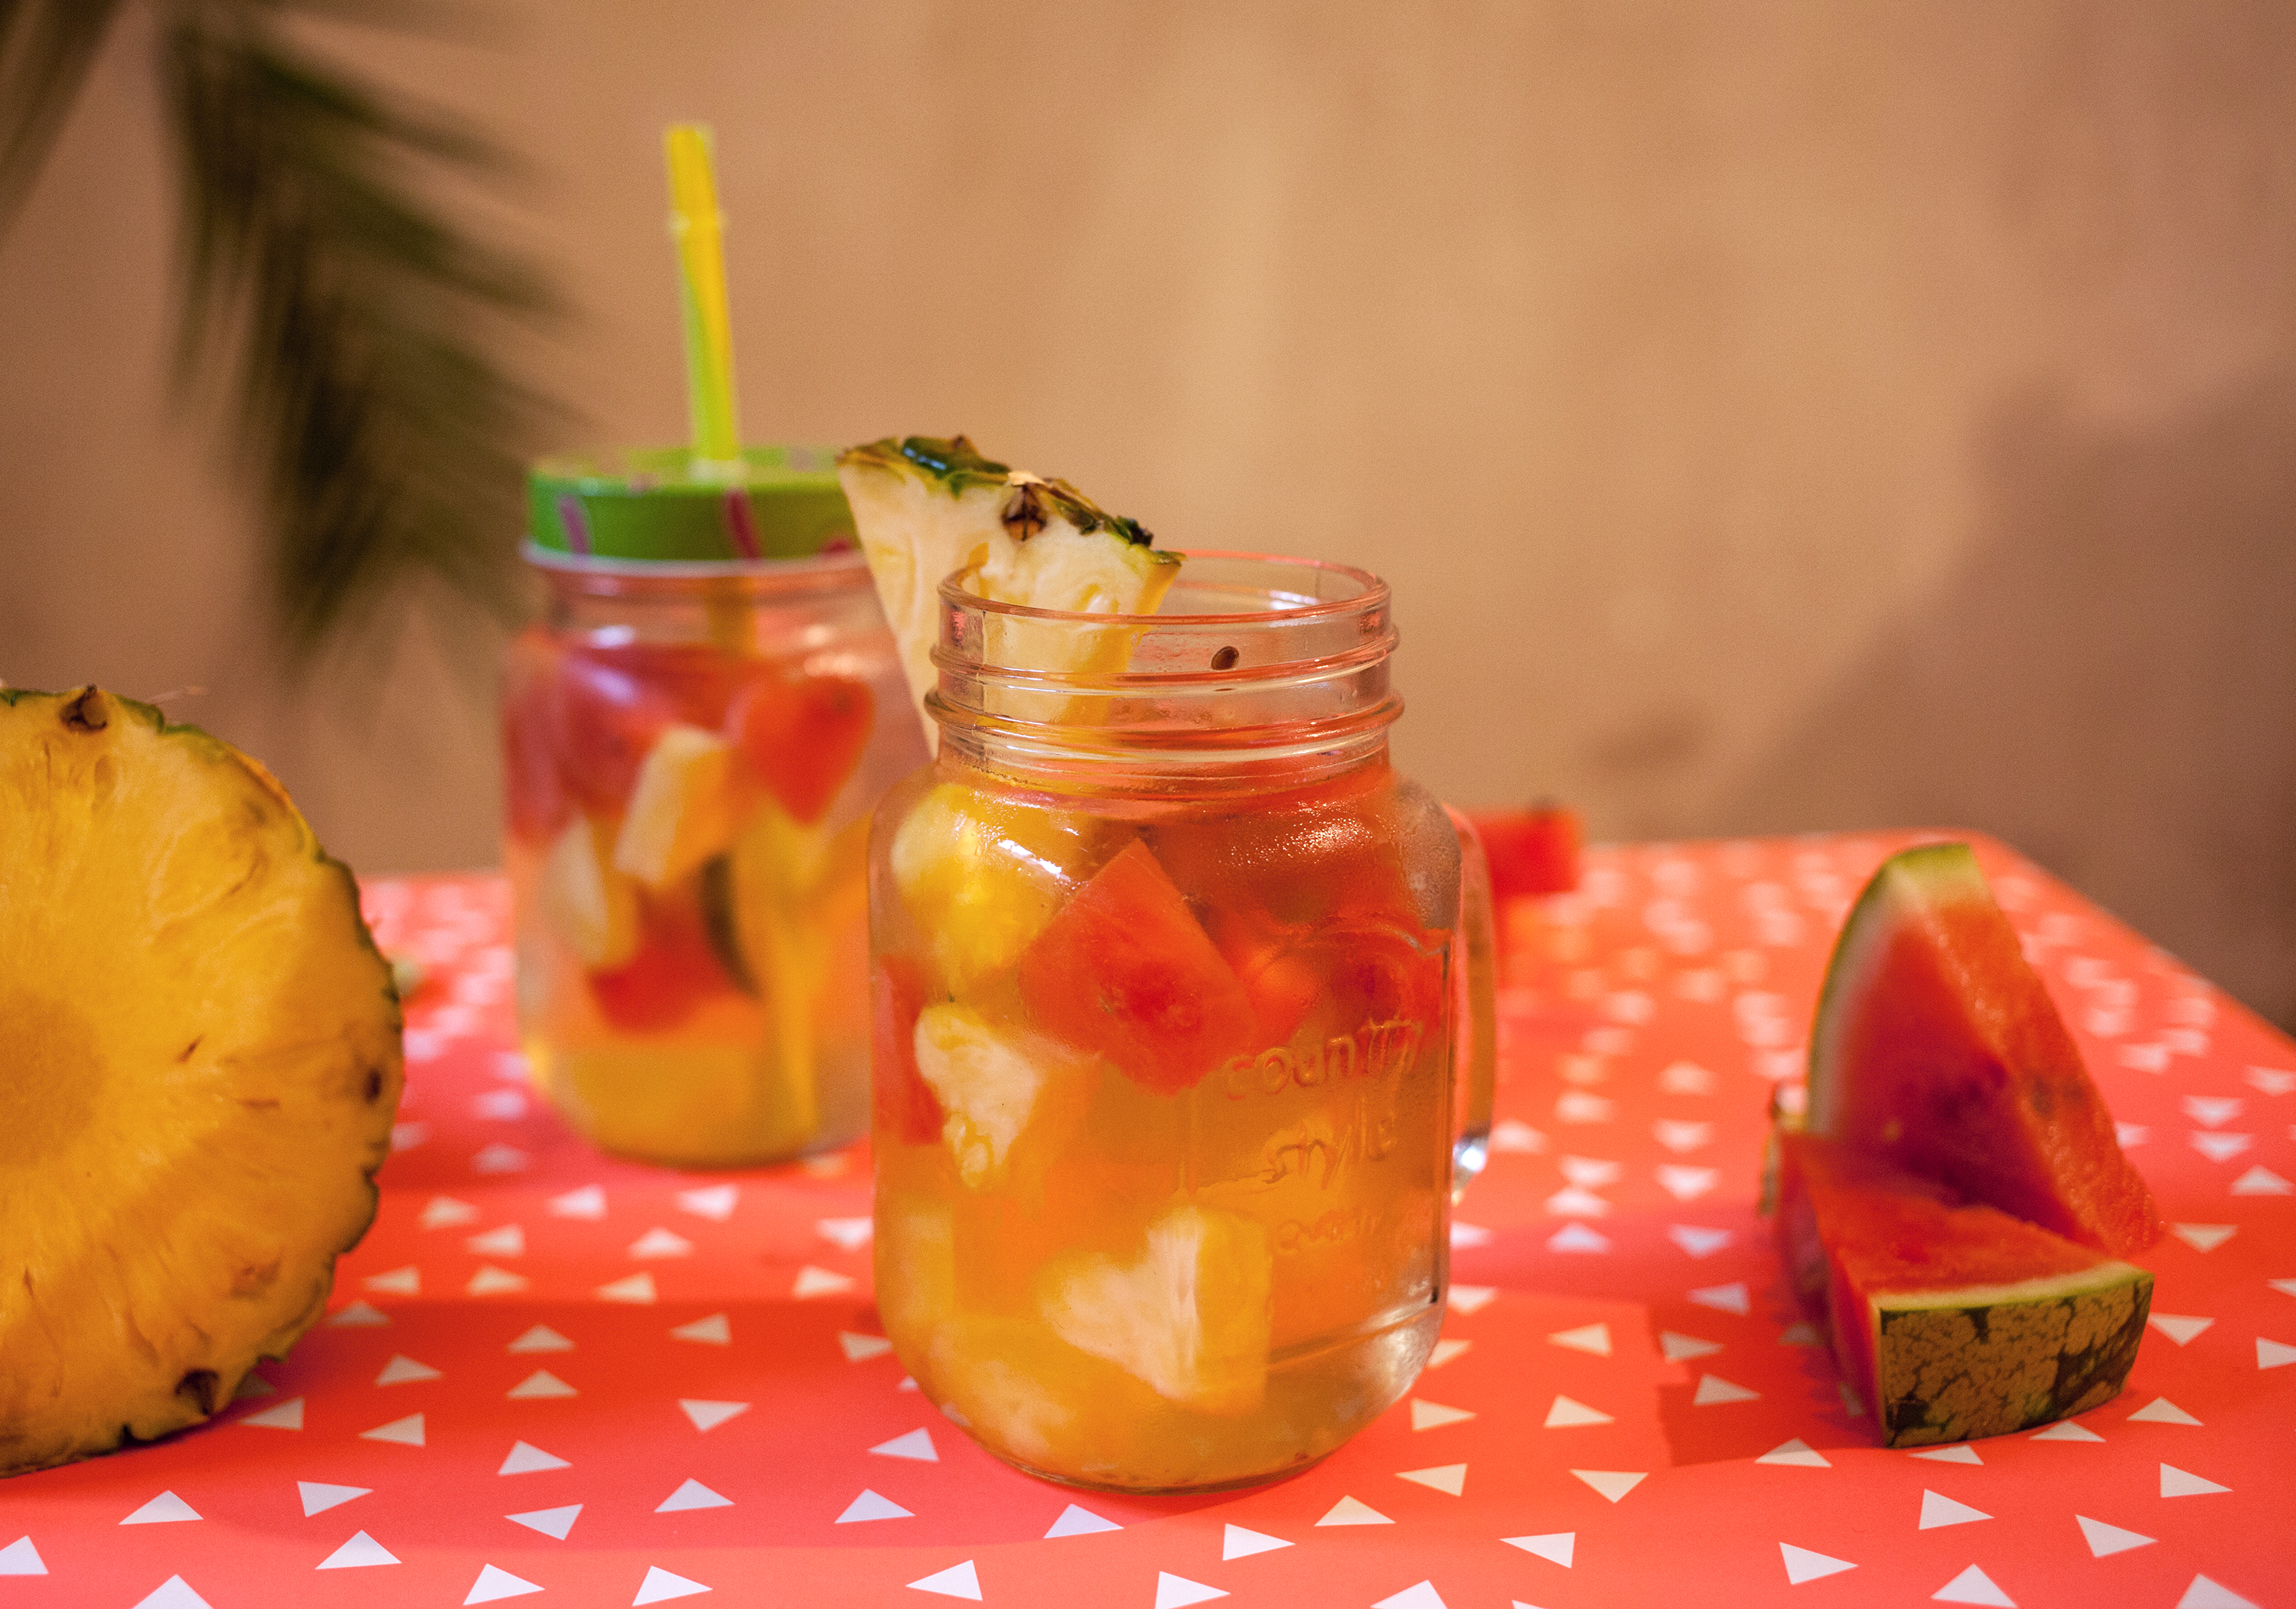 Vitamine satt mit dem leckeren Ananas-Wassermelonen-Sangria | Mit ...